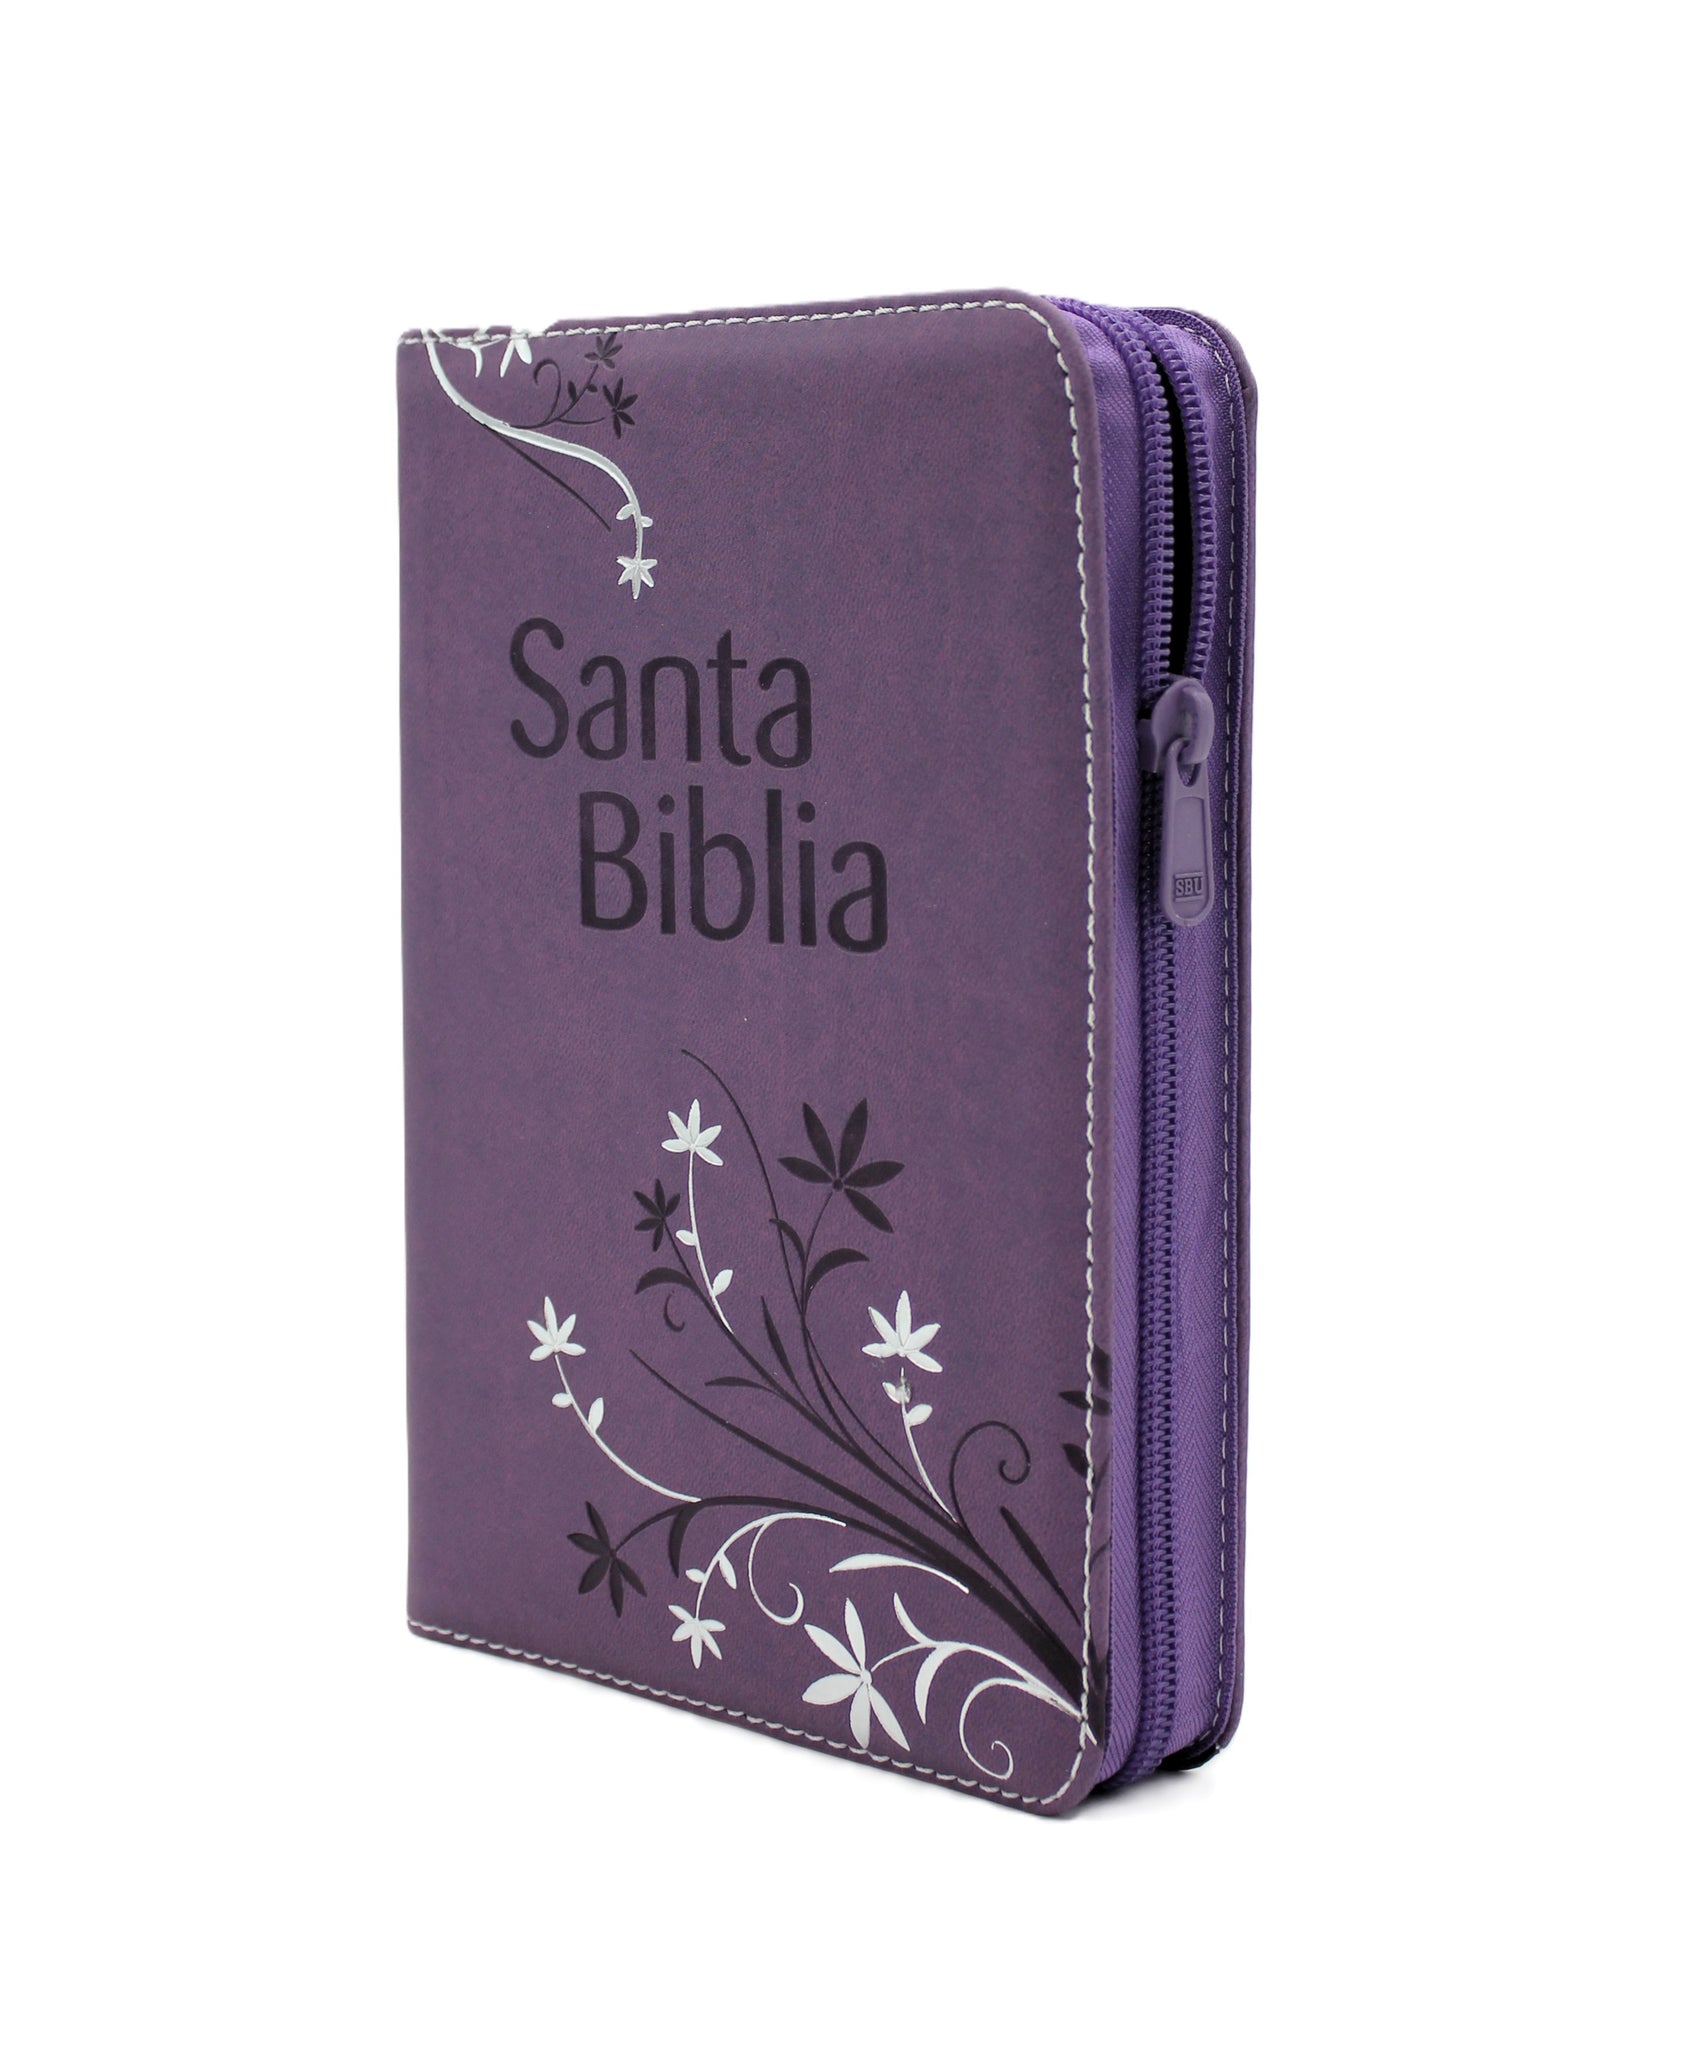 Biblia Reina Valera 1960 Letra Grande Tamano Manual con Cierre y Indice color Morado con flores